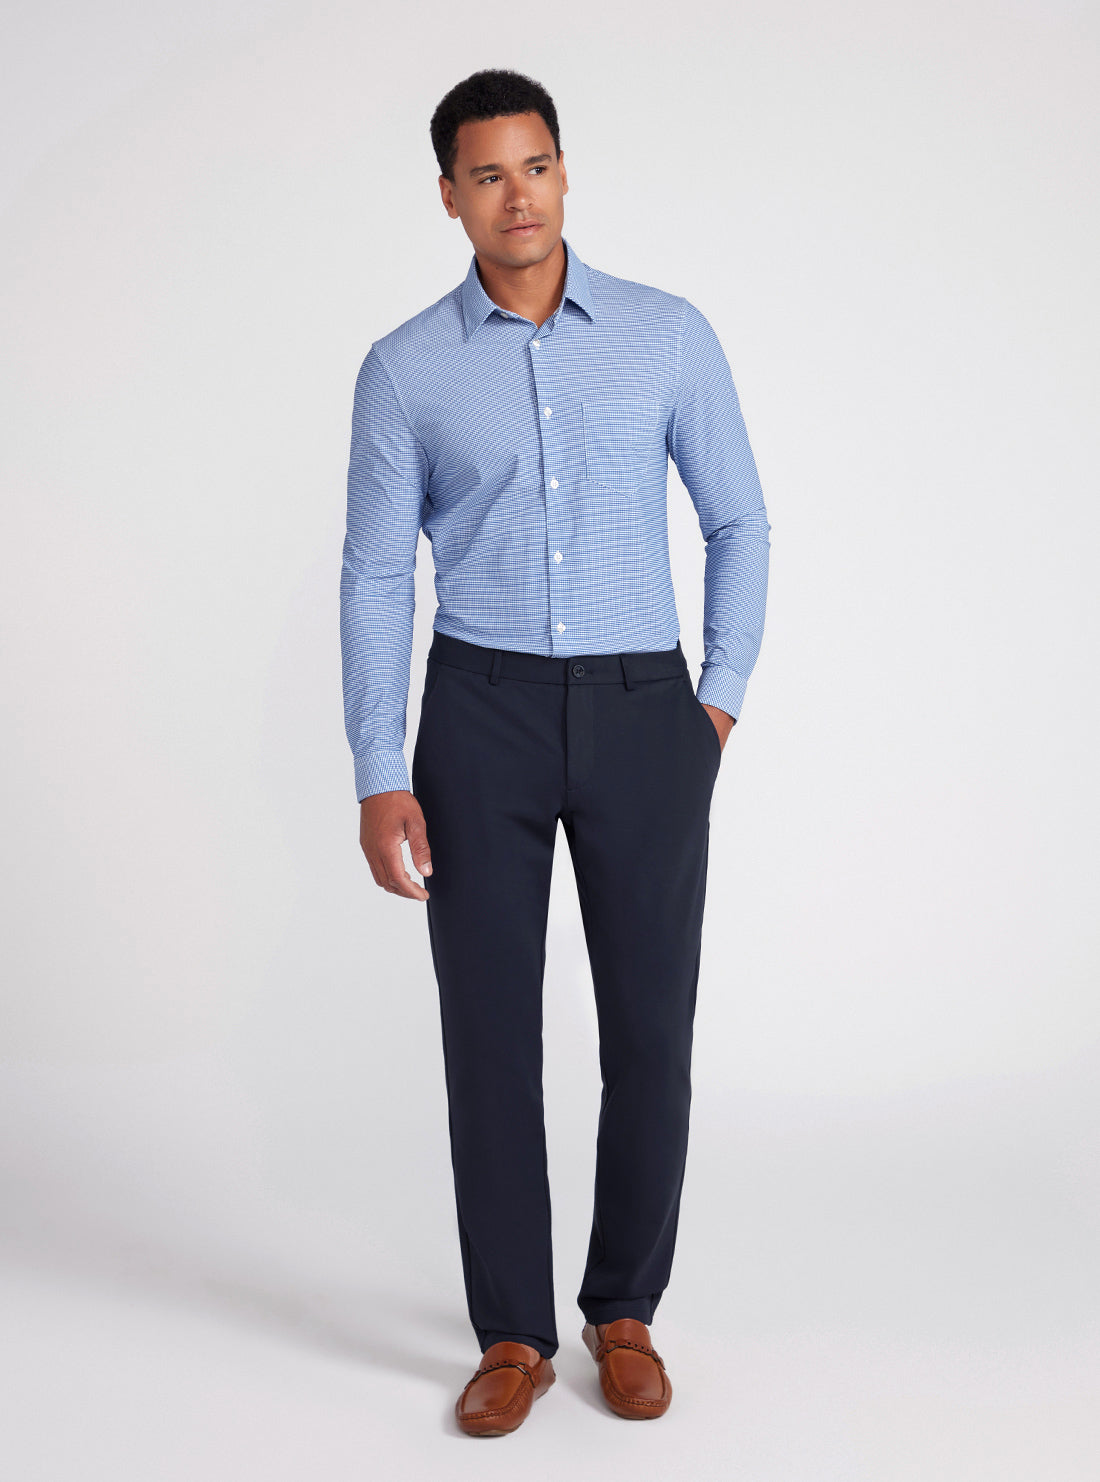 Blue Sunset Tech Stretch Shirt | GUESS men's apparel | full view